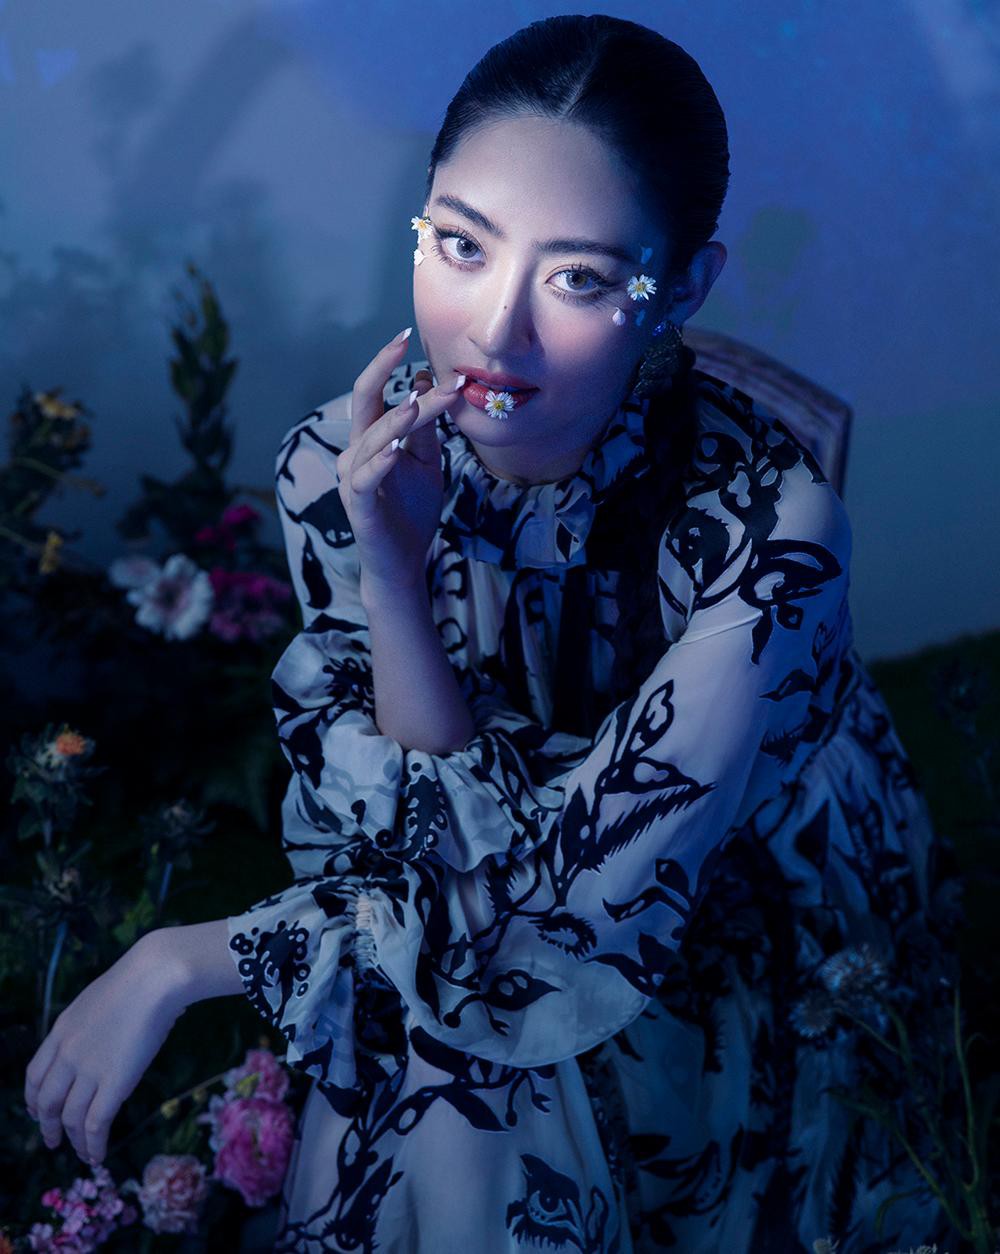 Hoa hậu Lương Thùy Linh khoe vẻ đẹp gợi cảm, quyến rũ trong bộ ảnh mới - Ảnh 5.